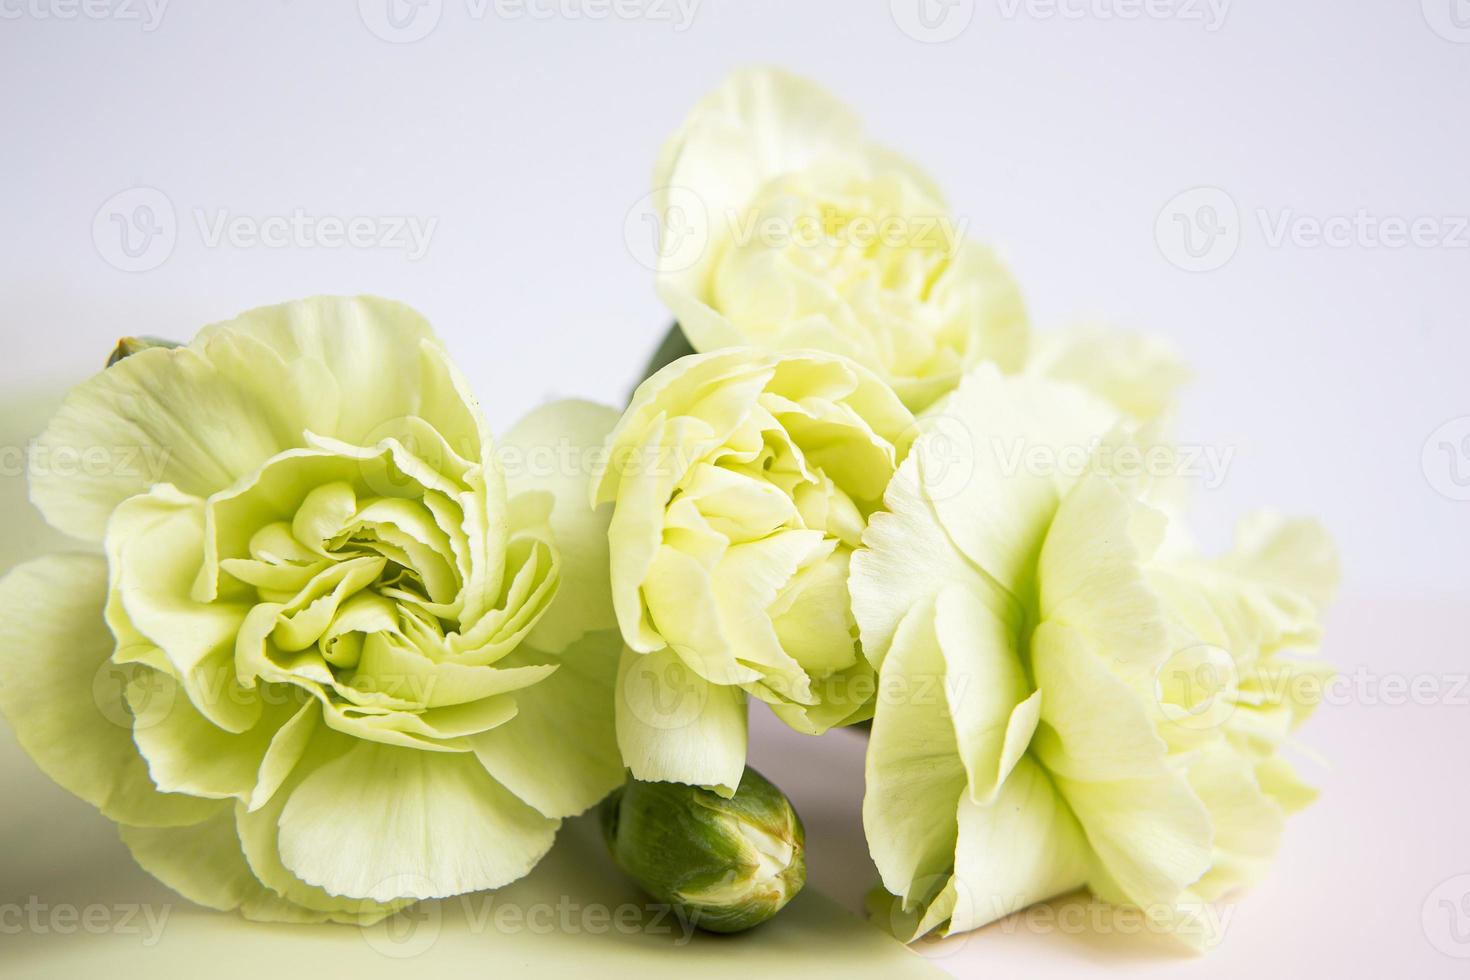 grün-gelbe Blumen auf einem weißen lila Hintergrund. Grußkarte. foto